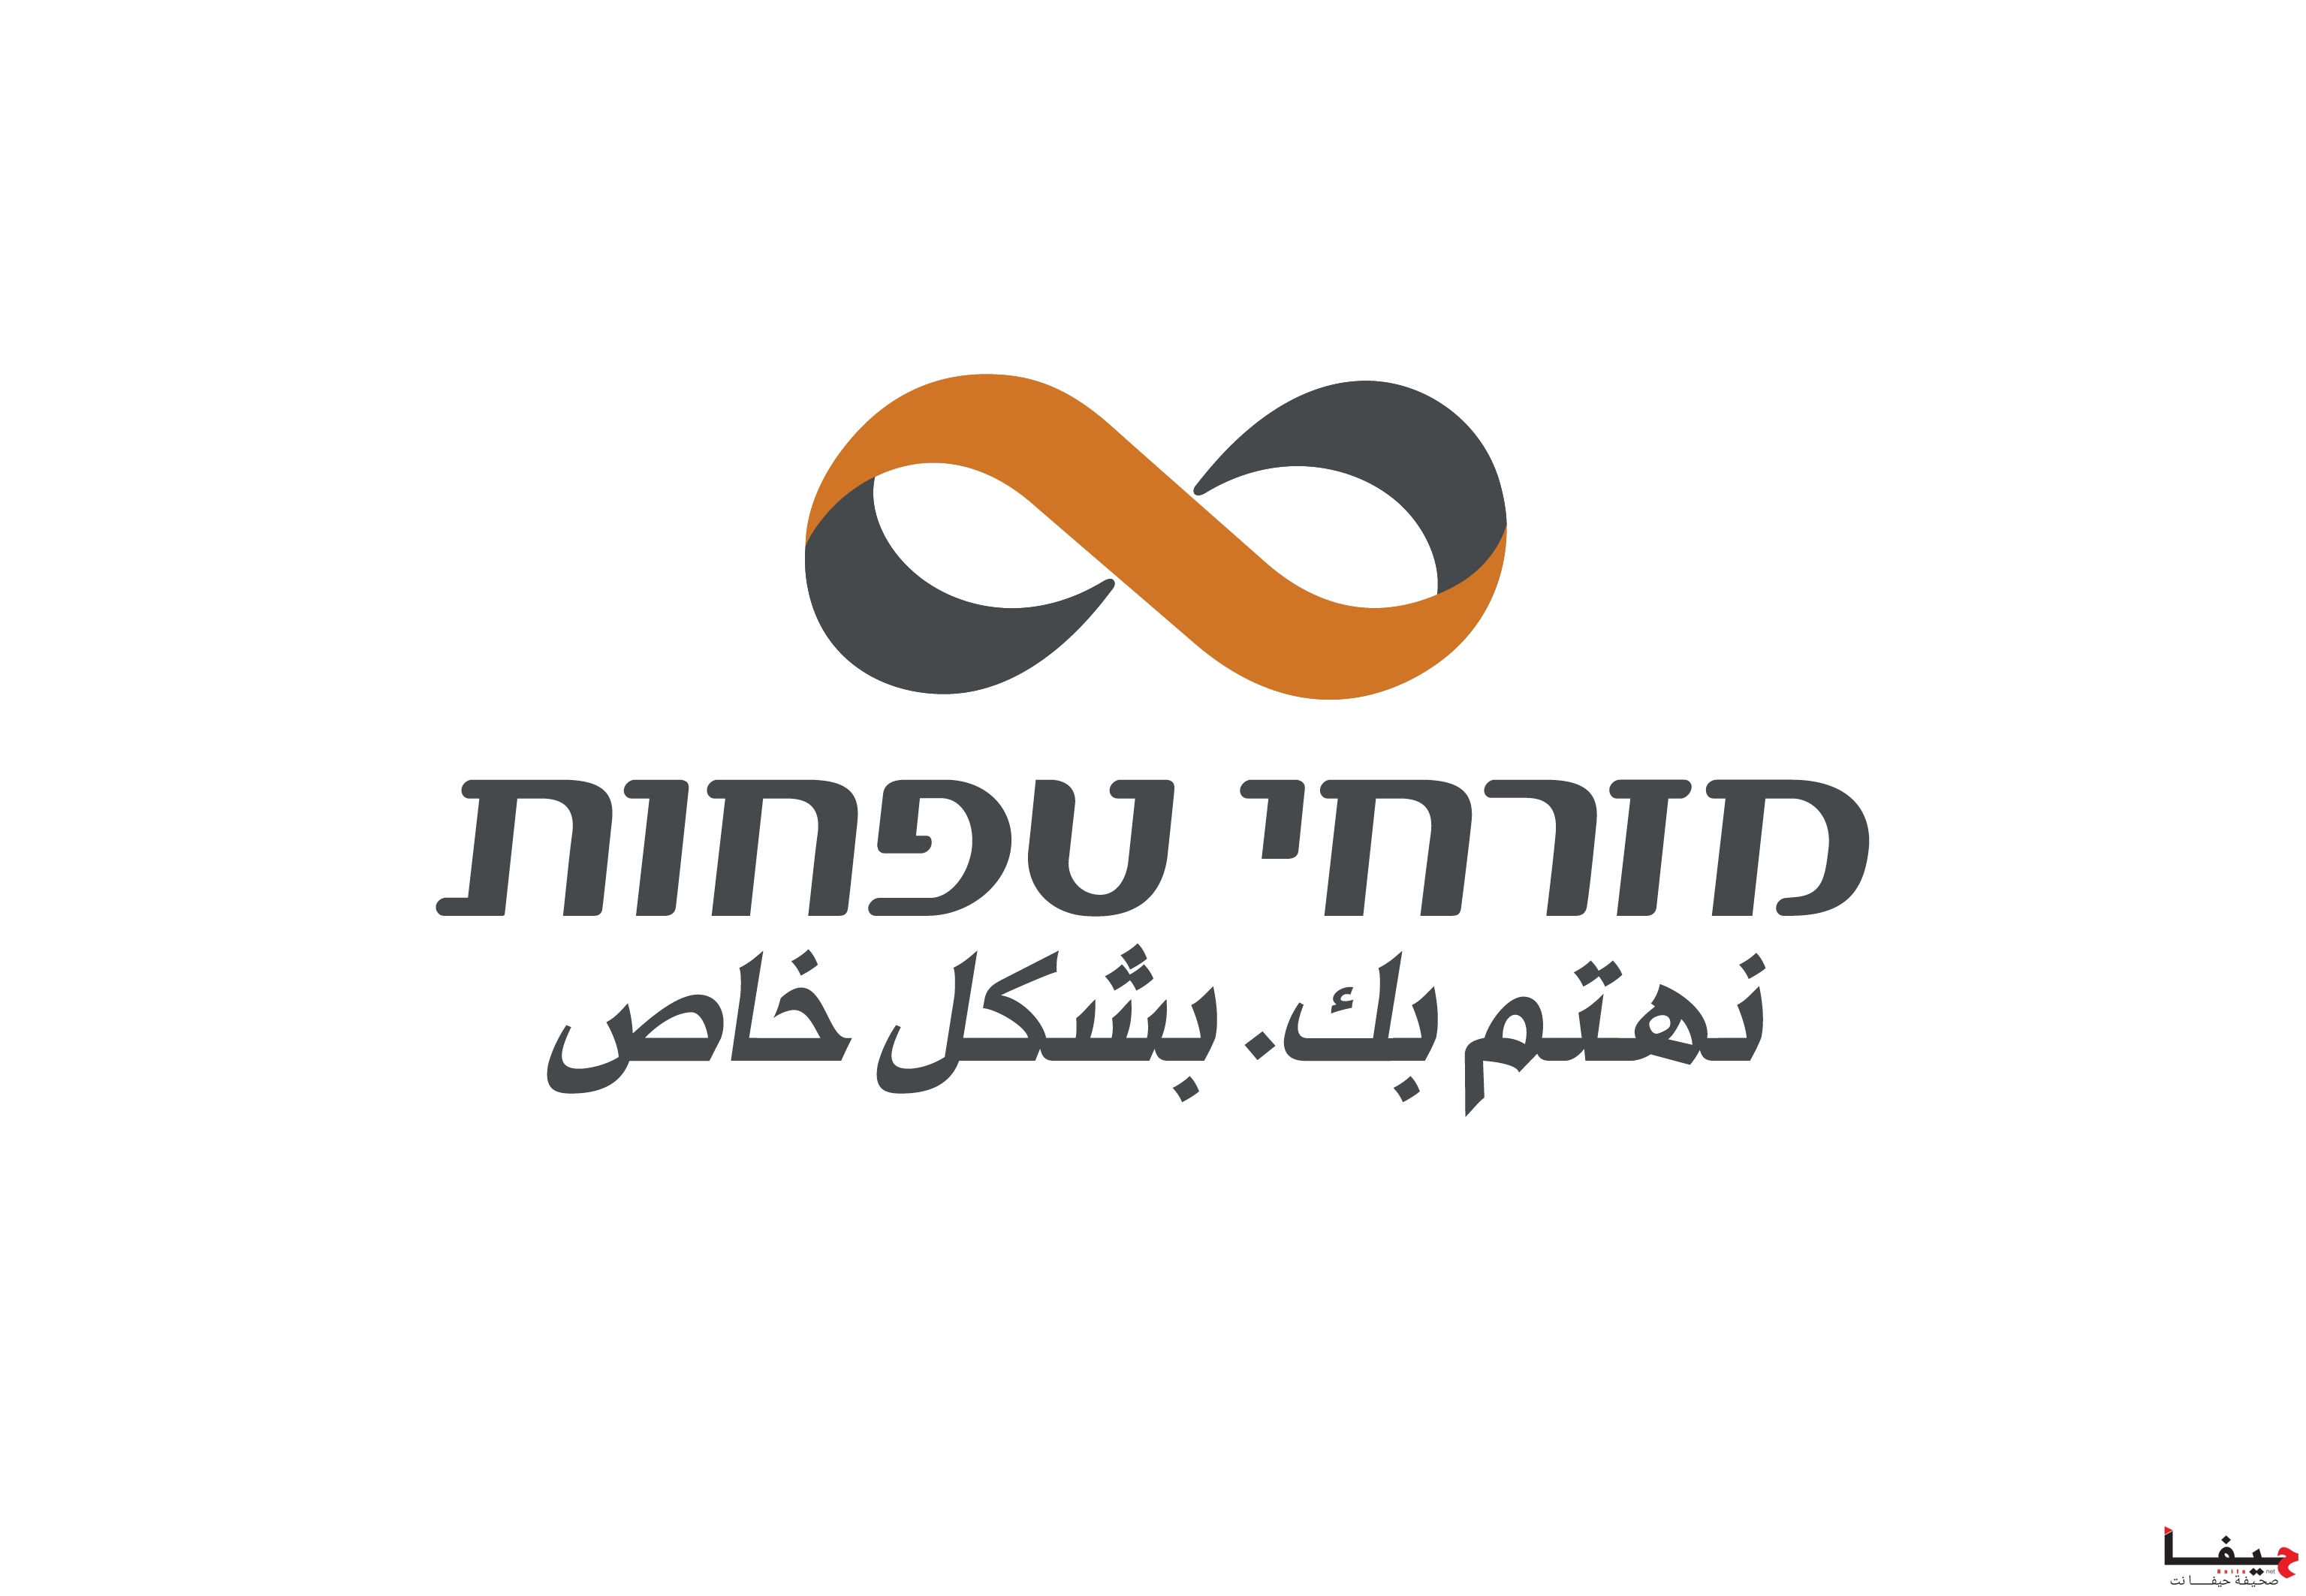 MZR_logo (4)